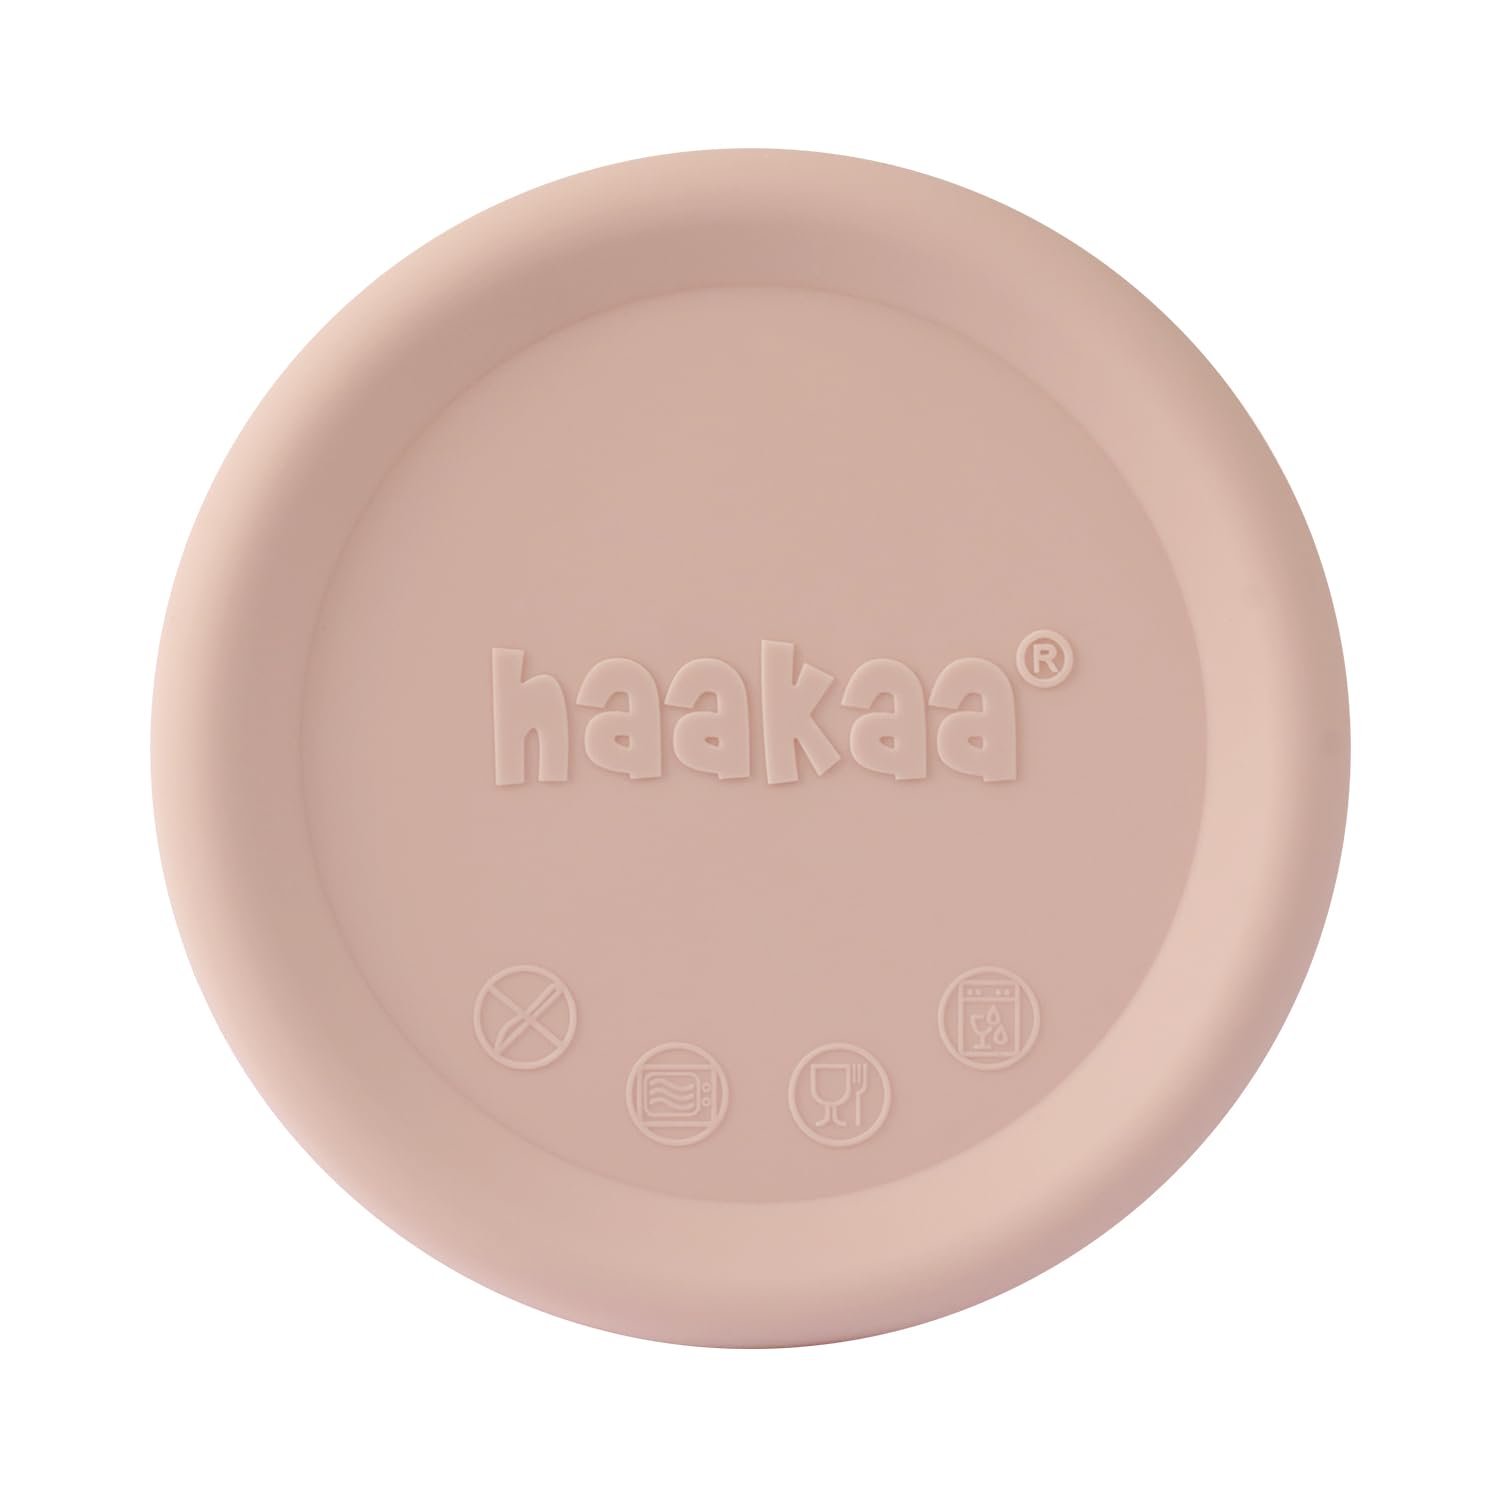 haakaa Deckel für Milchpumpe, Silikondeckel, passend für alle haakaa Milchpumpen, Generation 1/2/3, auslaufsicher, staubdicht, Rosa